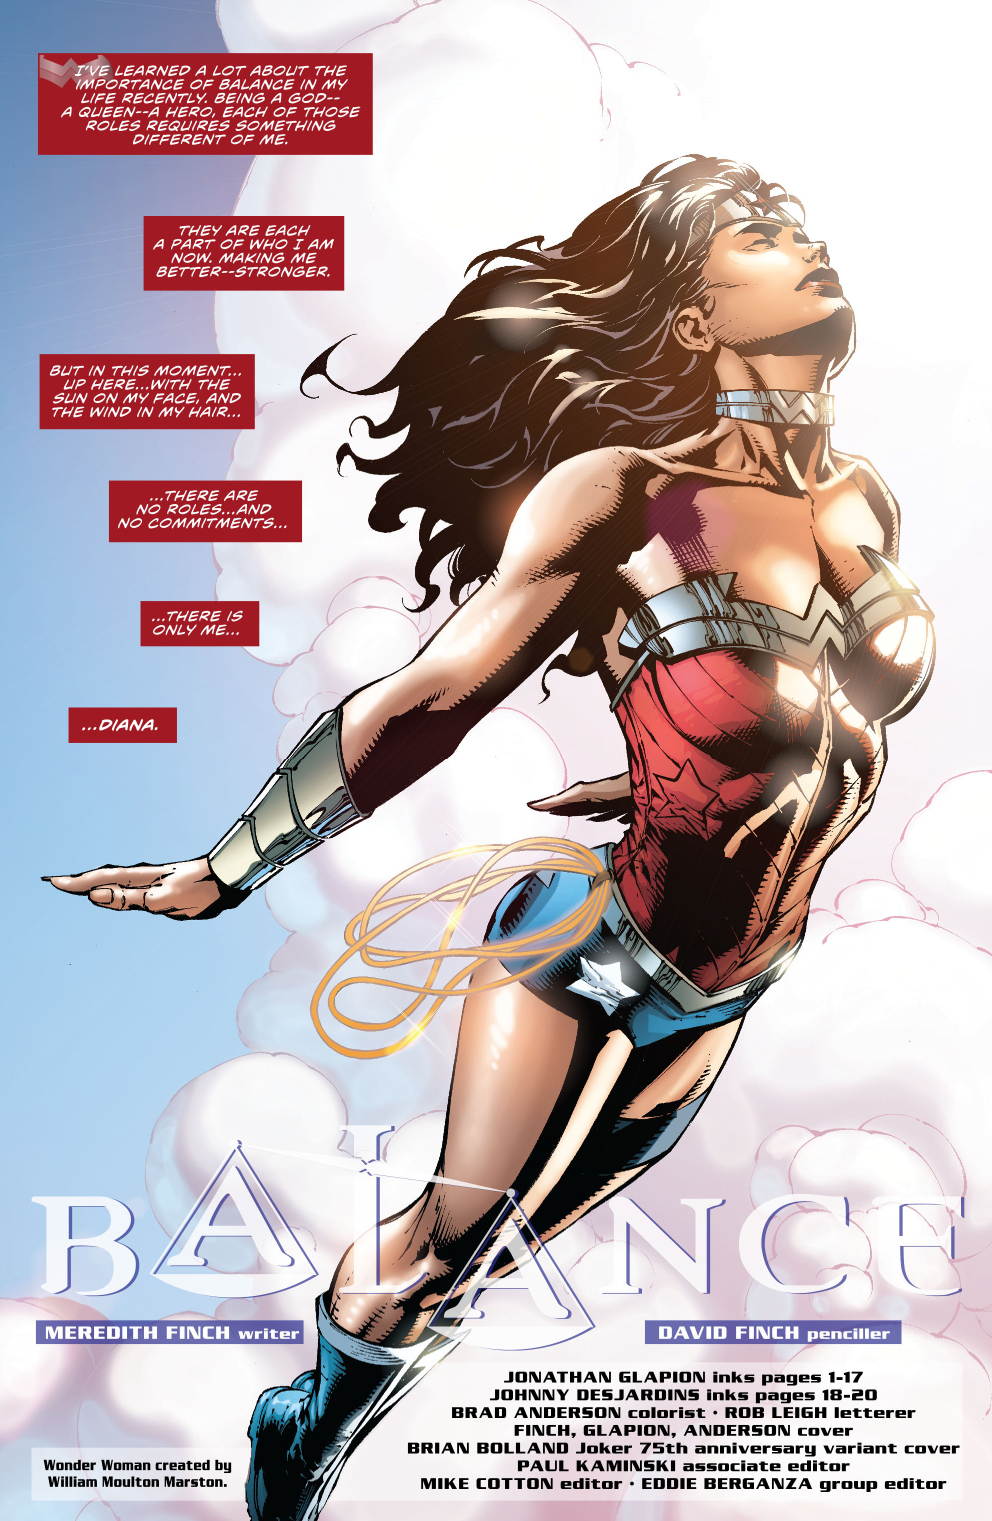 Wonder Woman (Wonder Woman Vol. 4 #41)